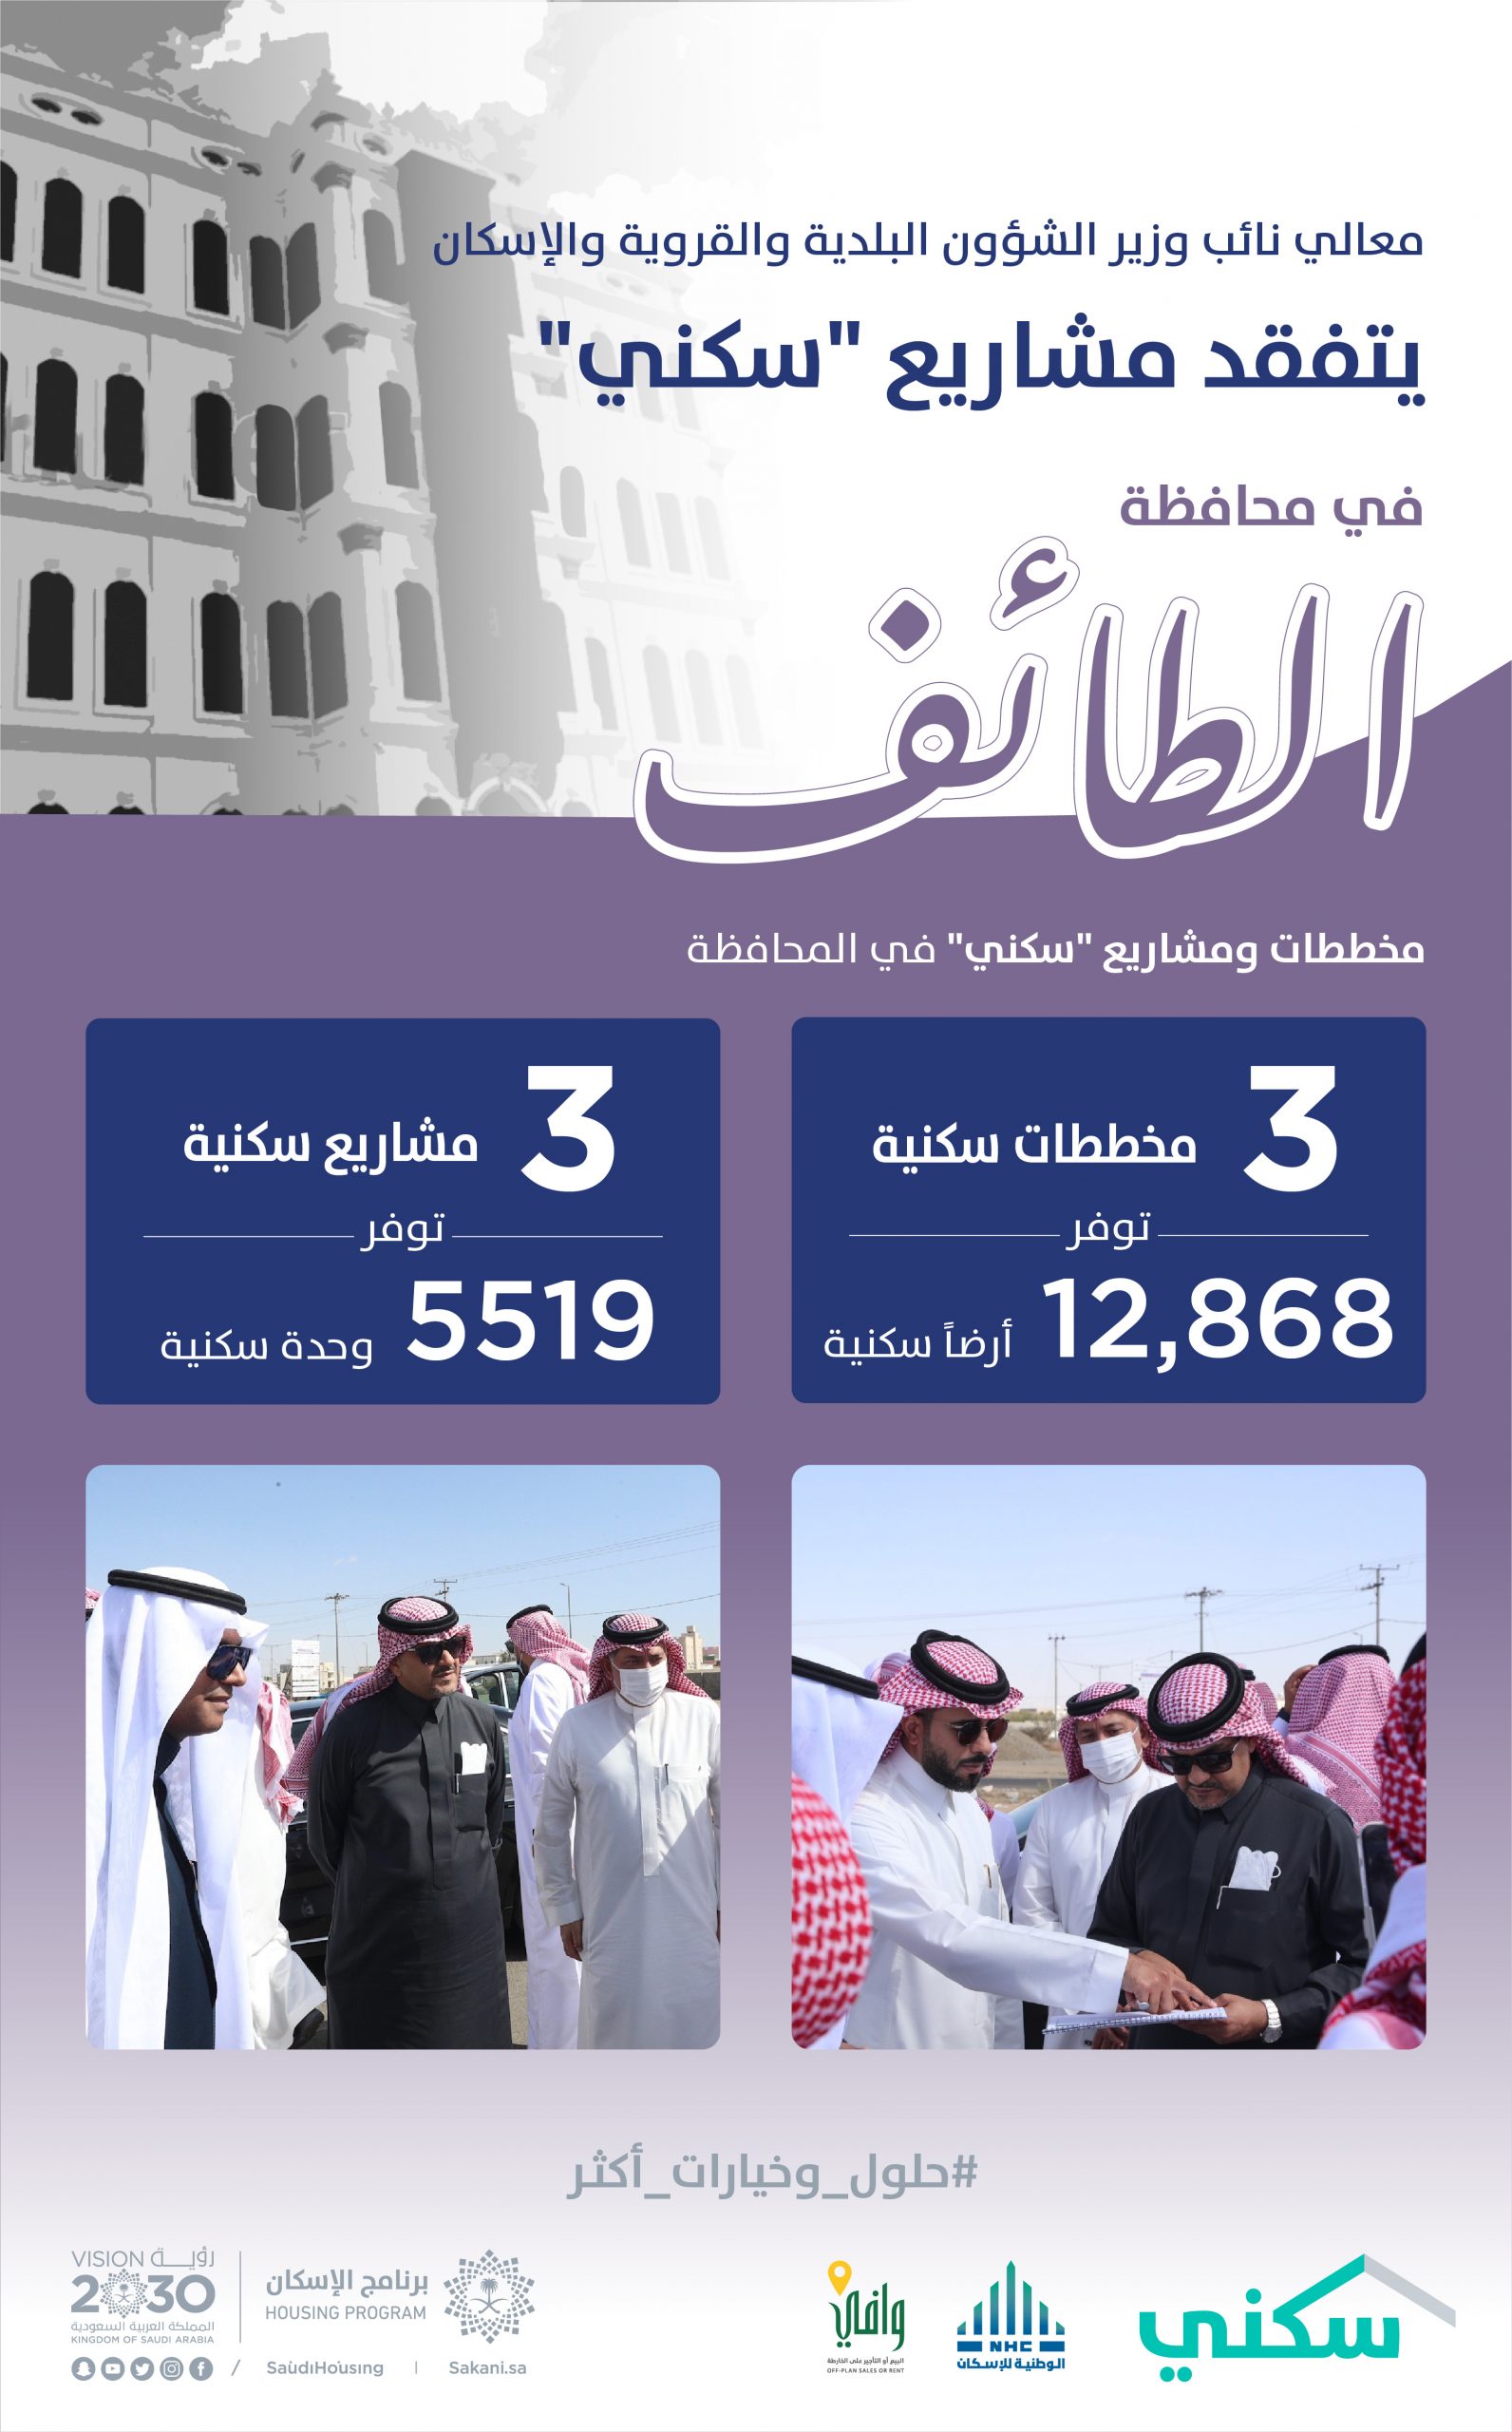 3 مشاريع سكنية في الطائف توفر أكثر من 5519 وحدة